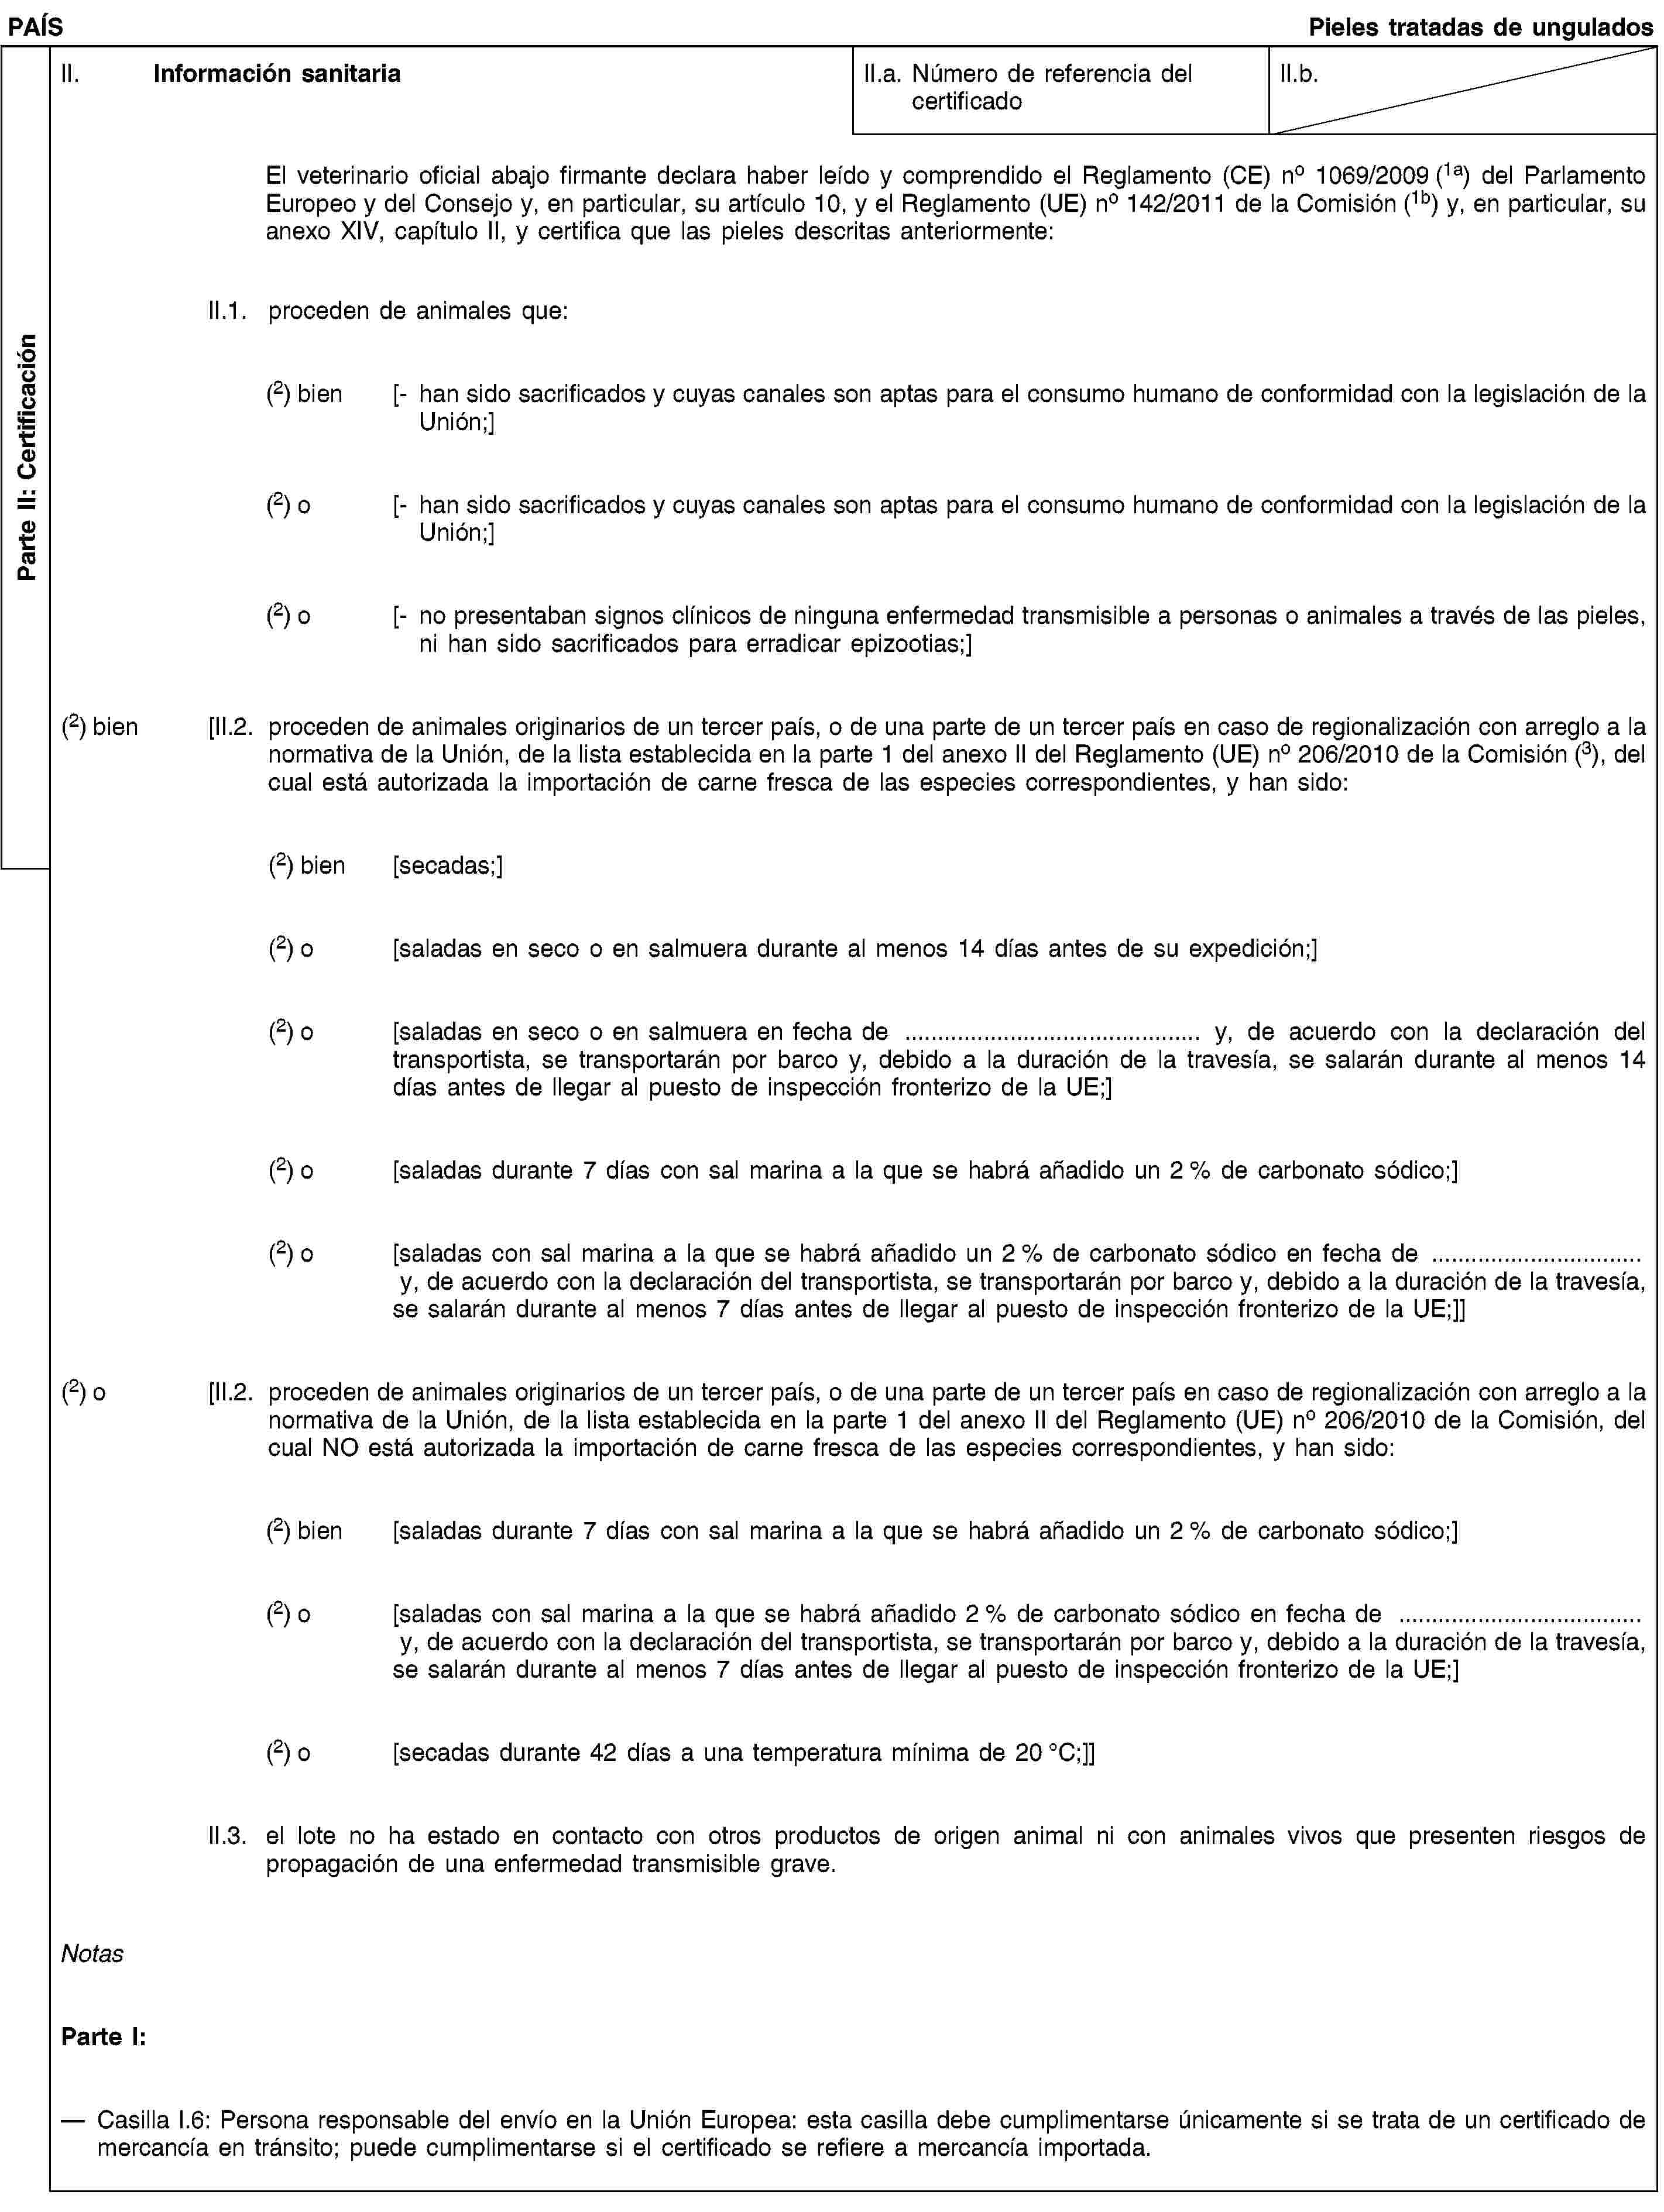 Parte II: CertificaciónPAÍSPieles tratadas de unguladosII. Información sanitariaII.a. Número de referencia del certificadoII.b.El veterinario oficial abajo firmante declara haber leído y comprendido el Reglamento (CE) no 1069/2009 (1a) del Parlamento Europeo y del Consejo y, en particular, su artículo 10, y el Reglamento (UE) no 142/2011 de la Comisión (1b) y, en particular, su anexo XIV, capítulo II, y certifica que las pieles descritas anteriormente:II.1. proceden de animales que:(2) bien [- han sido sacrificados y cuyas canales son aptas para el consumo humano de conformidad con la legislación de la Unión;](2) o [- han sido sacrificados y cuyas canales son aptas para el consumo humano de conformidad con la legislación de la Unión;](2) o [- no presentaban signos clínicos de ninguna enfermedad transmisible a personas o animales a través de las pieles, ni han sido sacrificados para erradicar epizootias;](2) bien [II.2. proceden de animales originarios de un tercer país, o de una parte de un tercer país en caso de regionalización con arreglo a la normativa de la Unión, de la lista establecida en la parte 1 del anexo II del Reglamento (UE) no 206/2010 de la Comisión (3), del cual está autorizada la importación de carne fresca de las especies correspondientes, y han sido:(2) bien [secadas;](2) o [saladas en seco o en salmuera durante al menos 14 días antes de su expedición;](2) o [saladas en seco o en salmuera en fecha de … y, de acuerdo con la declaración del transportista, se transportarán por barco y, debido a la duración de la travesía, se salarán durante al menos 14 días antes de llegar al puesto de inspección fronterizo de la UE;](2) o [saladas durante 7 días con sal marina a la que se habrá añadido un 2 % de carbonato sódico;](2) o [saladas con sal marina a la que se habrá añadido un 2 % de carbonato sódico en fecha de … y, de acuerdo con la declaración del transportista, se transportarán por barco y, debido a la duración de la travesía, se salarán durante al menos 7 días antes de llegar al puesto de inspección fronterizo de la UE;]](2) o [II.2. proceden de animales originarios de un tercer país, o de una parte de un tercer país en caso de regionalización con arreglo a la normativa de la Unión, de la lista establecida en la parte 1 del anexo II del Reglamento (UE) no 206/2010 de la Comisión, del cual NO está autorizada la importación de carne fresca de las especies correspondientes, y han sido:(2) bien [saladas durante 7 días con sal marina a la que se habrá añadido un 2 % de carbonato sódico;](2) o [saladas con sal marina a la que se habrá añadido 2 % de carbonato sódico en fecha de … y, de acuerdo con la declaración del transportista, se transportarán por barco y, debido a la duración de la travesía, se salarán durante al menos 7 días antes de llegar al puesto de inspección fronterizo de la UE;](2) o [secadas durante 42 días a una temperatura mínima de 20 °C;]]II.3. el lote no ha estado en contacto con otros productos de origen animal ni con animales vivos que presenten riesgos de propagación de una enfermedad transmisible grave.NotasParte I:Casilla I.6: Persona responsable del envío en la Unión Europea: esta casilla debe cumplimentarse únicamente si se trata de un certificado de mercancía en tránsito; puede cumplimentarse si el certificado se refiere a mercancía importada.